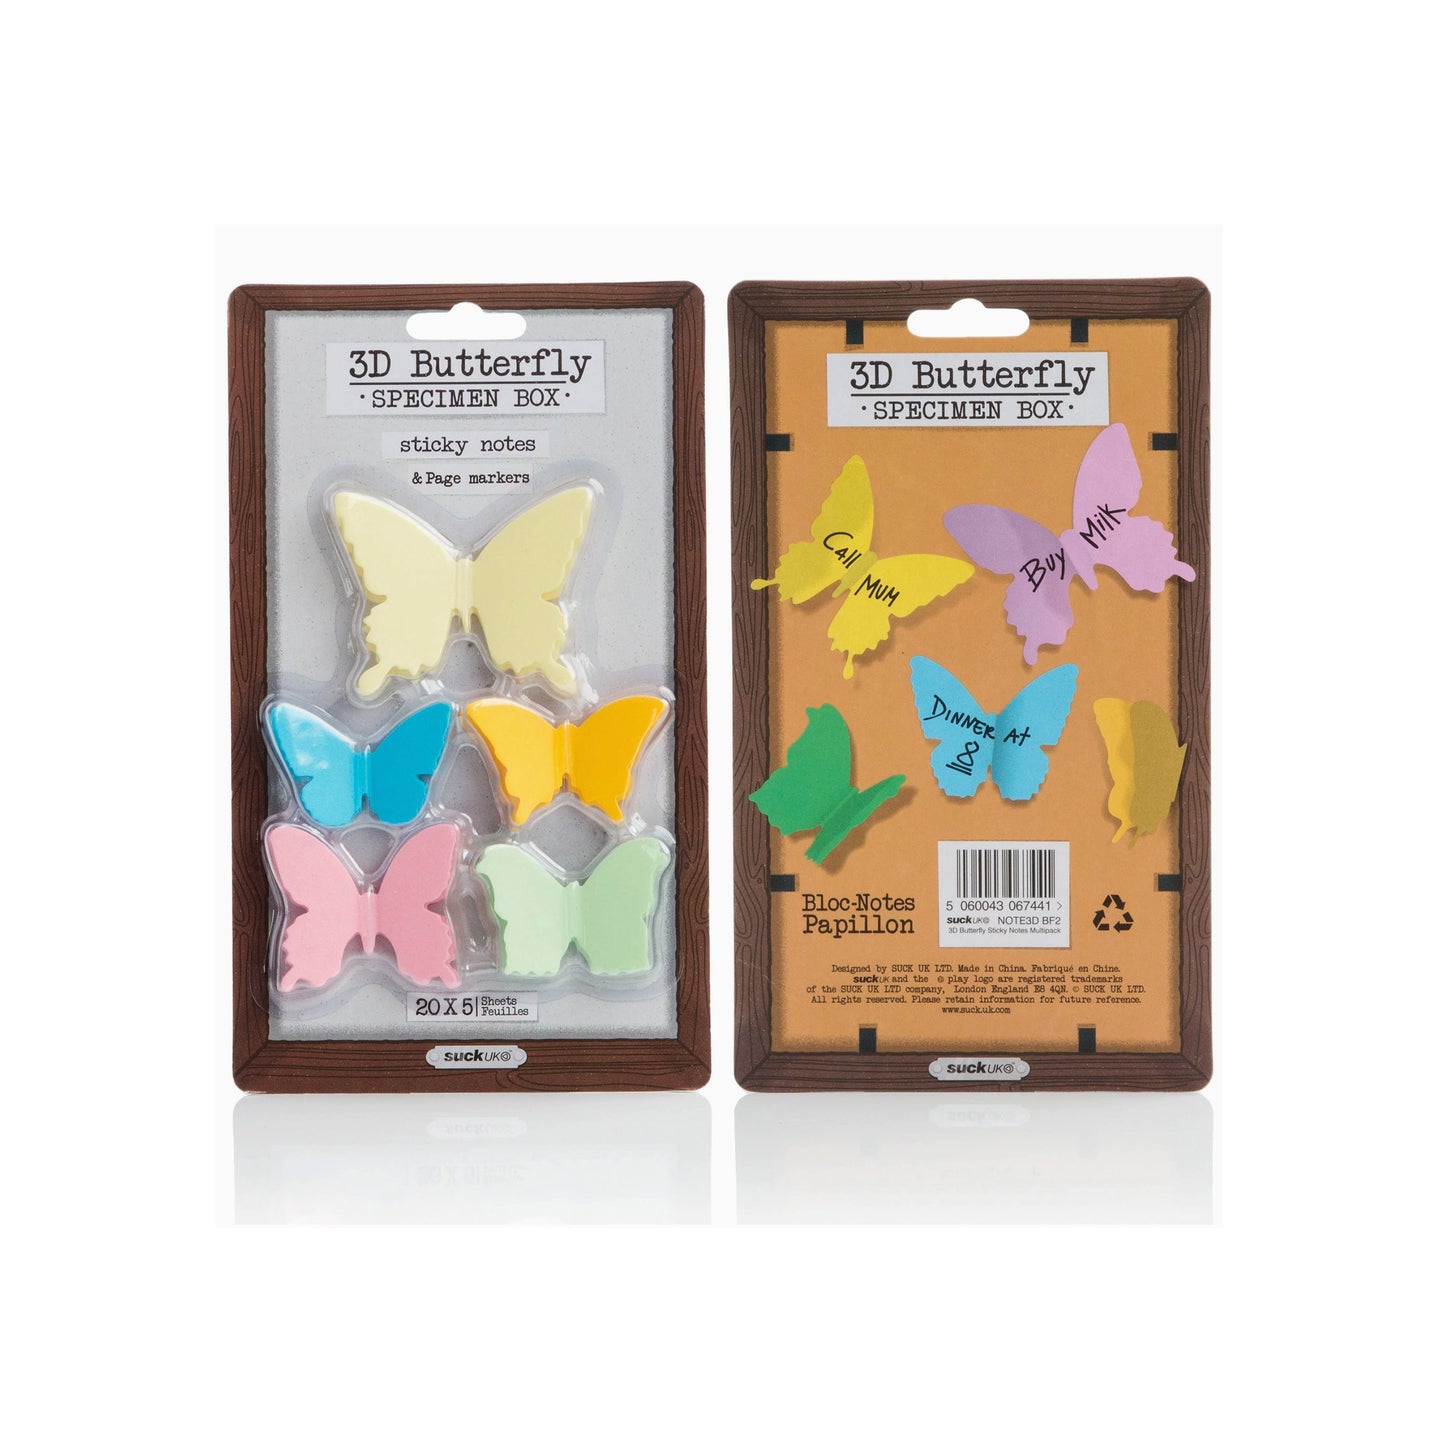 Butterfly Sticky Notes - Specimen Box